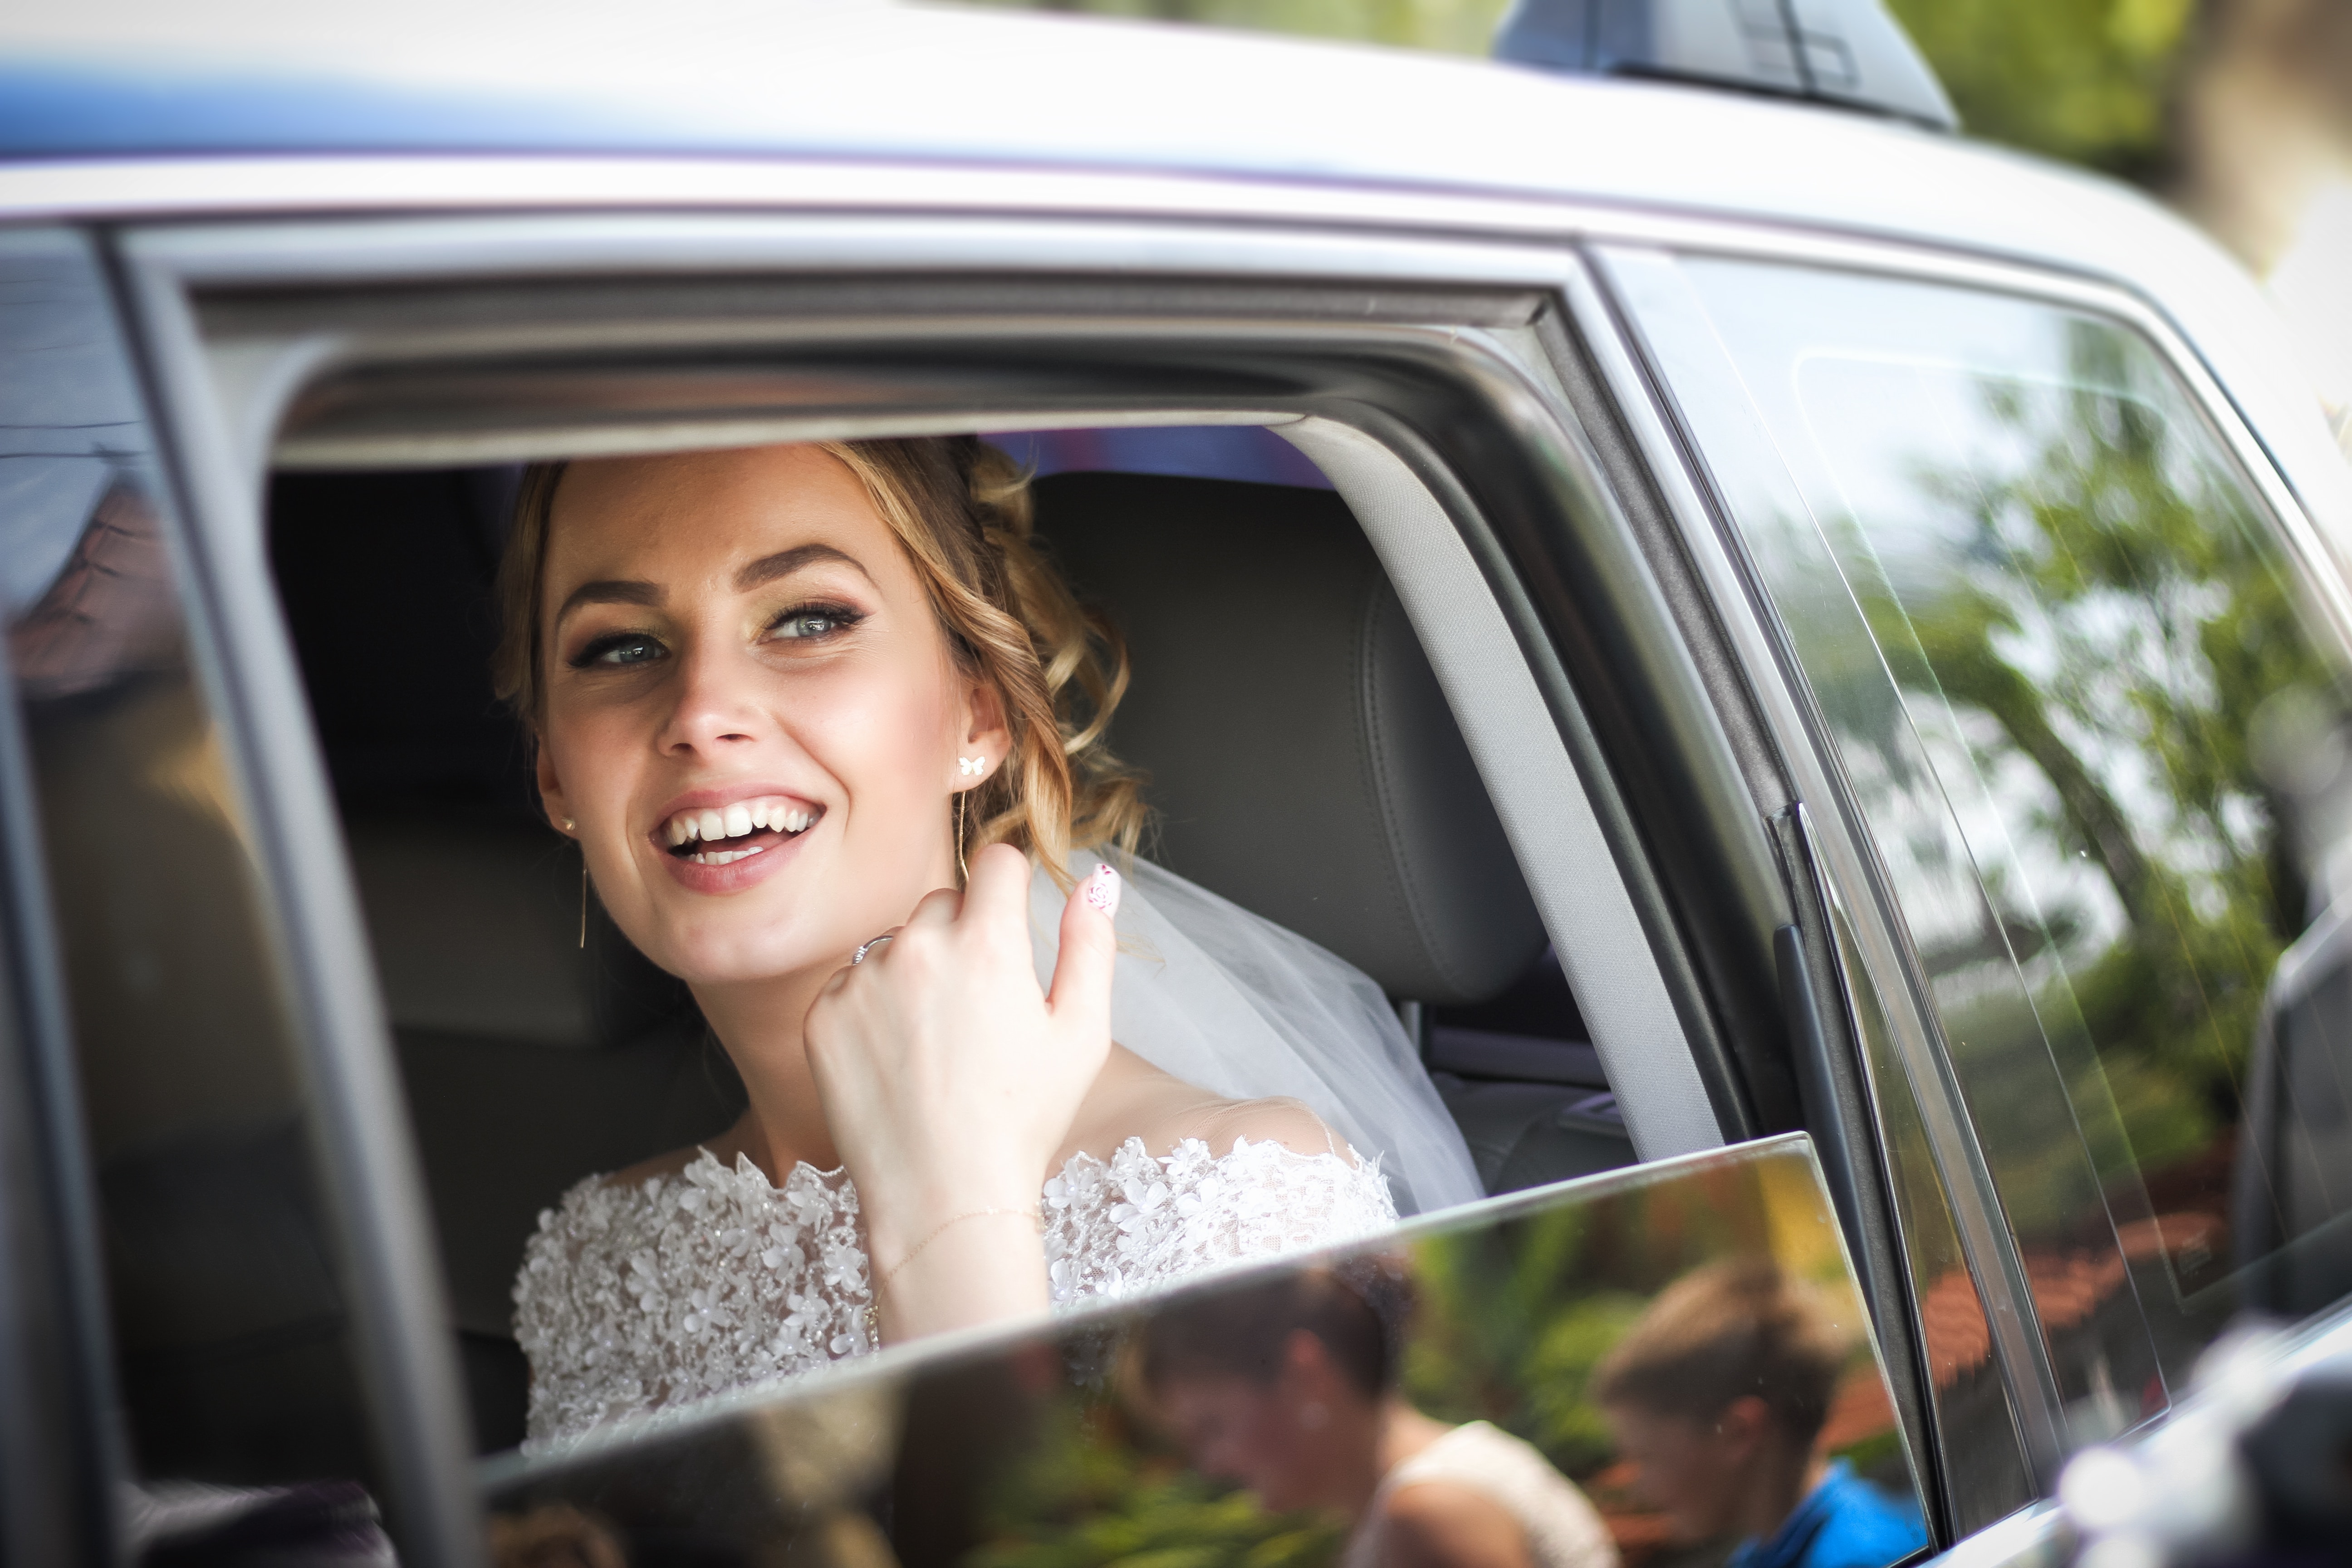 A happy looking bride in a car - Spring bride